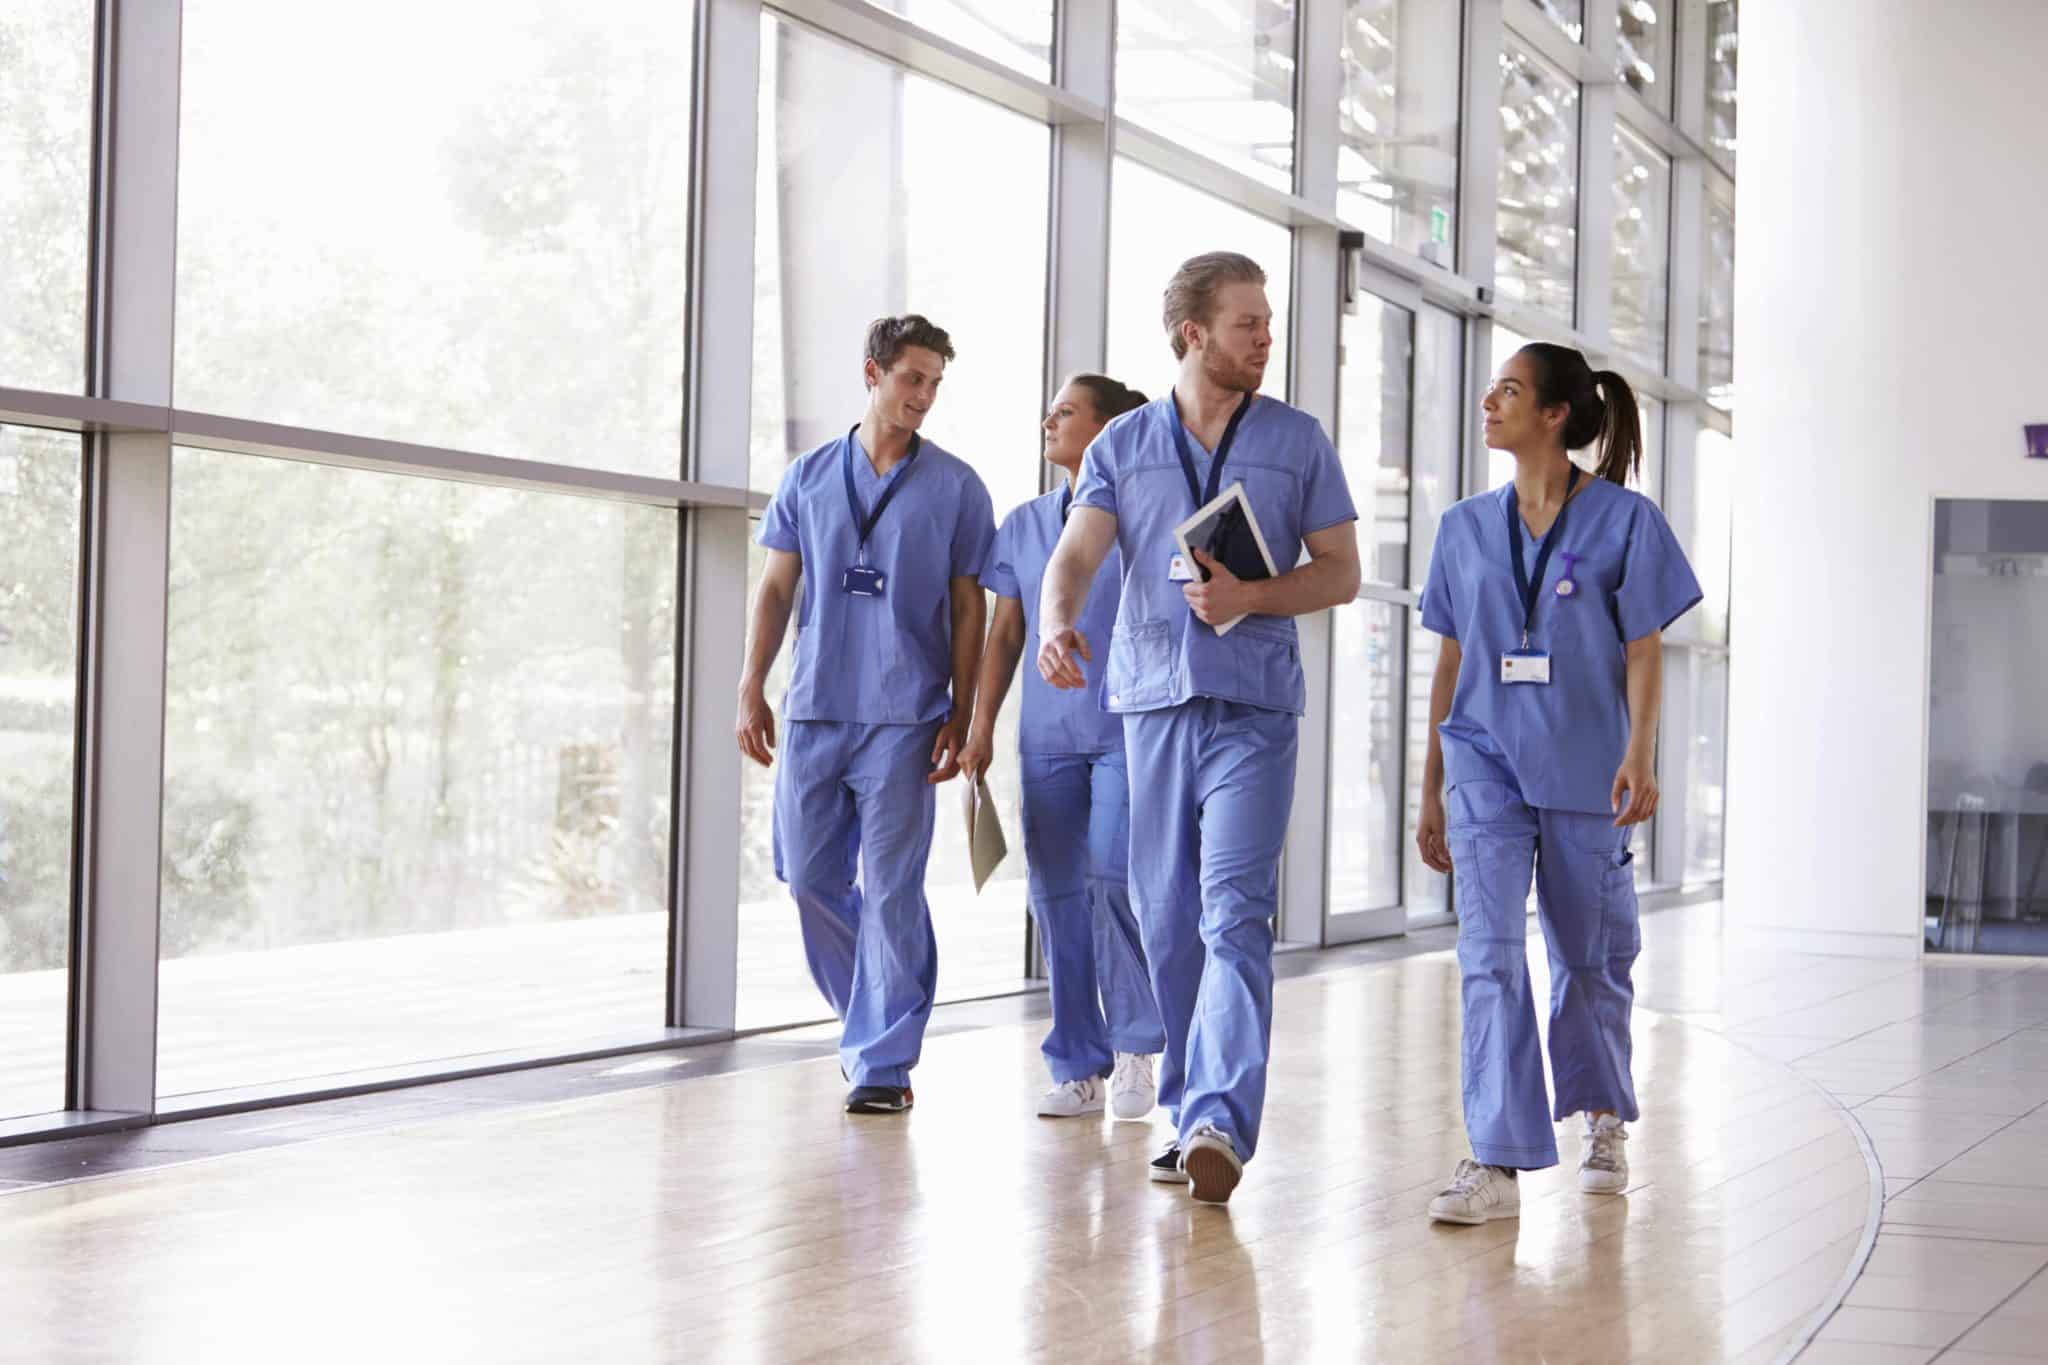 Medical staff walking in a hallway